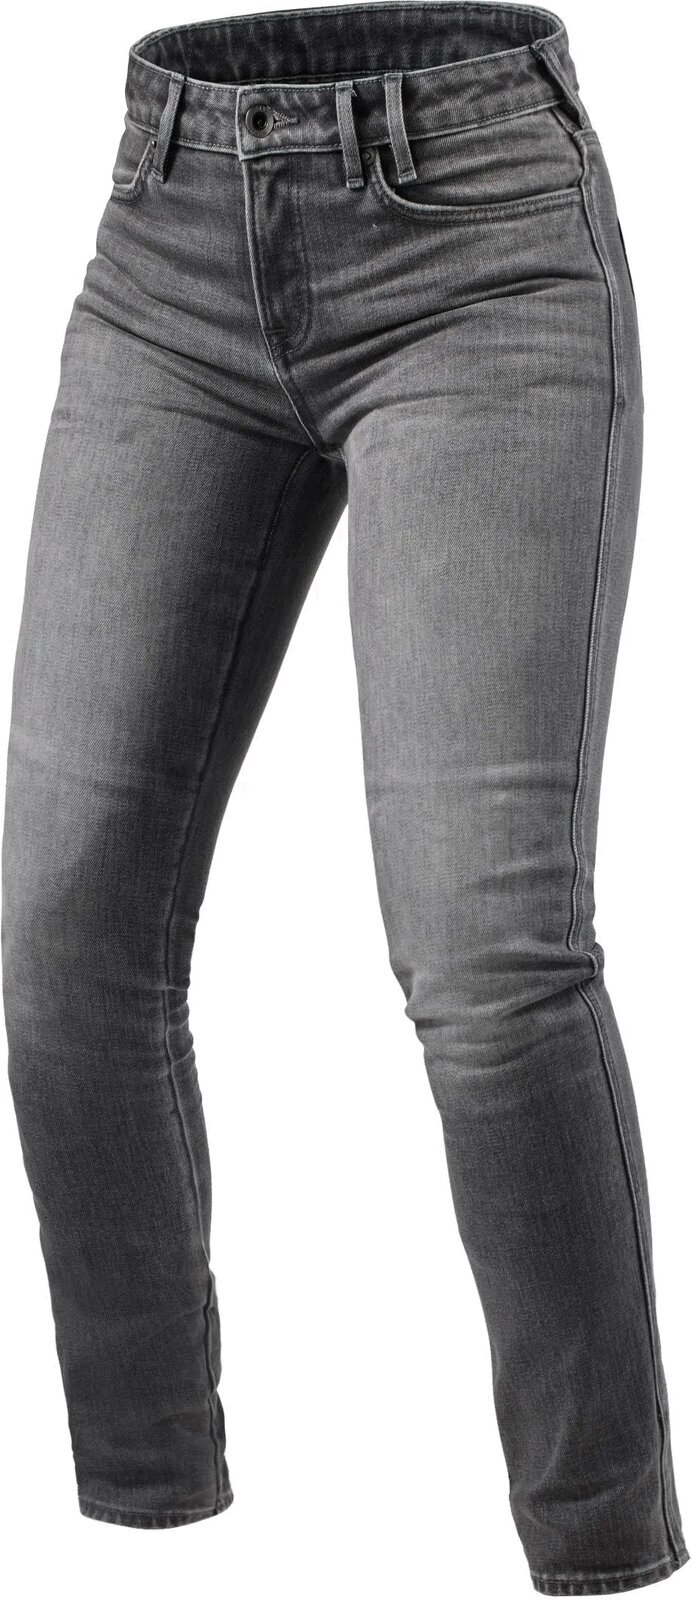 Motoristične jeans hlače Rev'it! Jeans Shelby 2 Ladies SK Medium Grey Stone 32/28 Motoristične jeans hlače